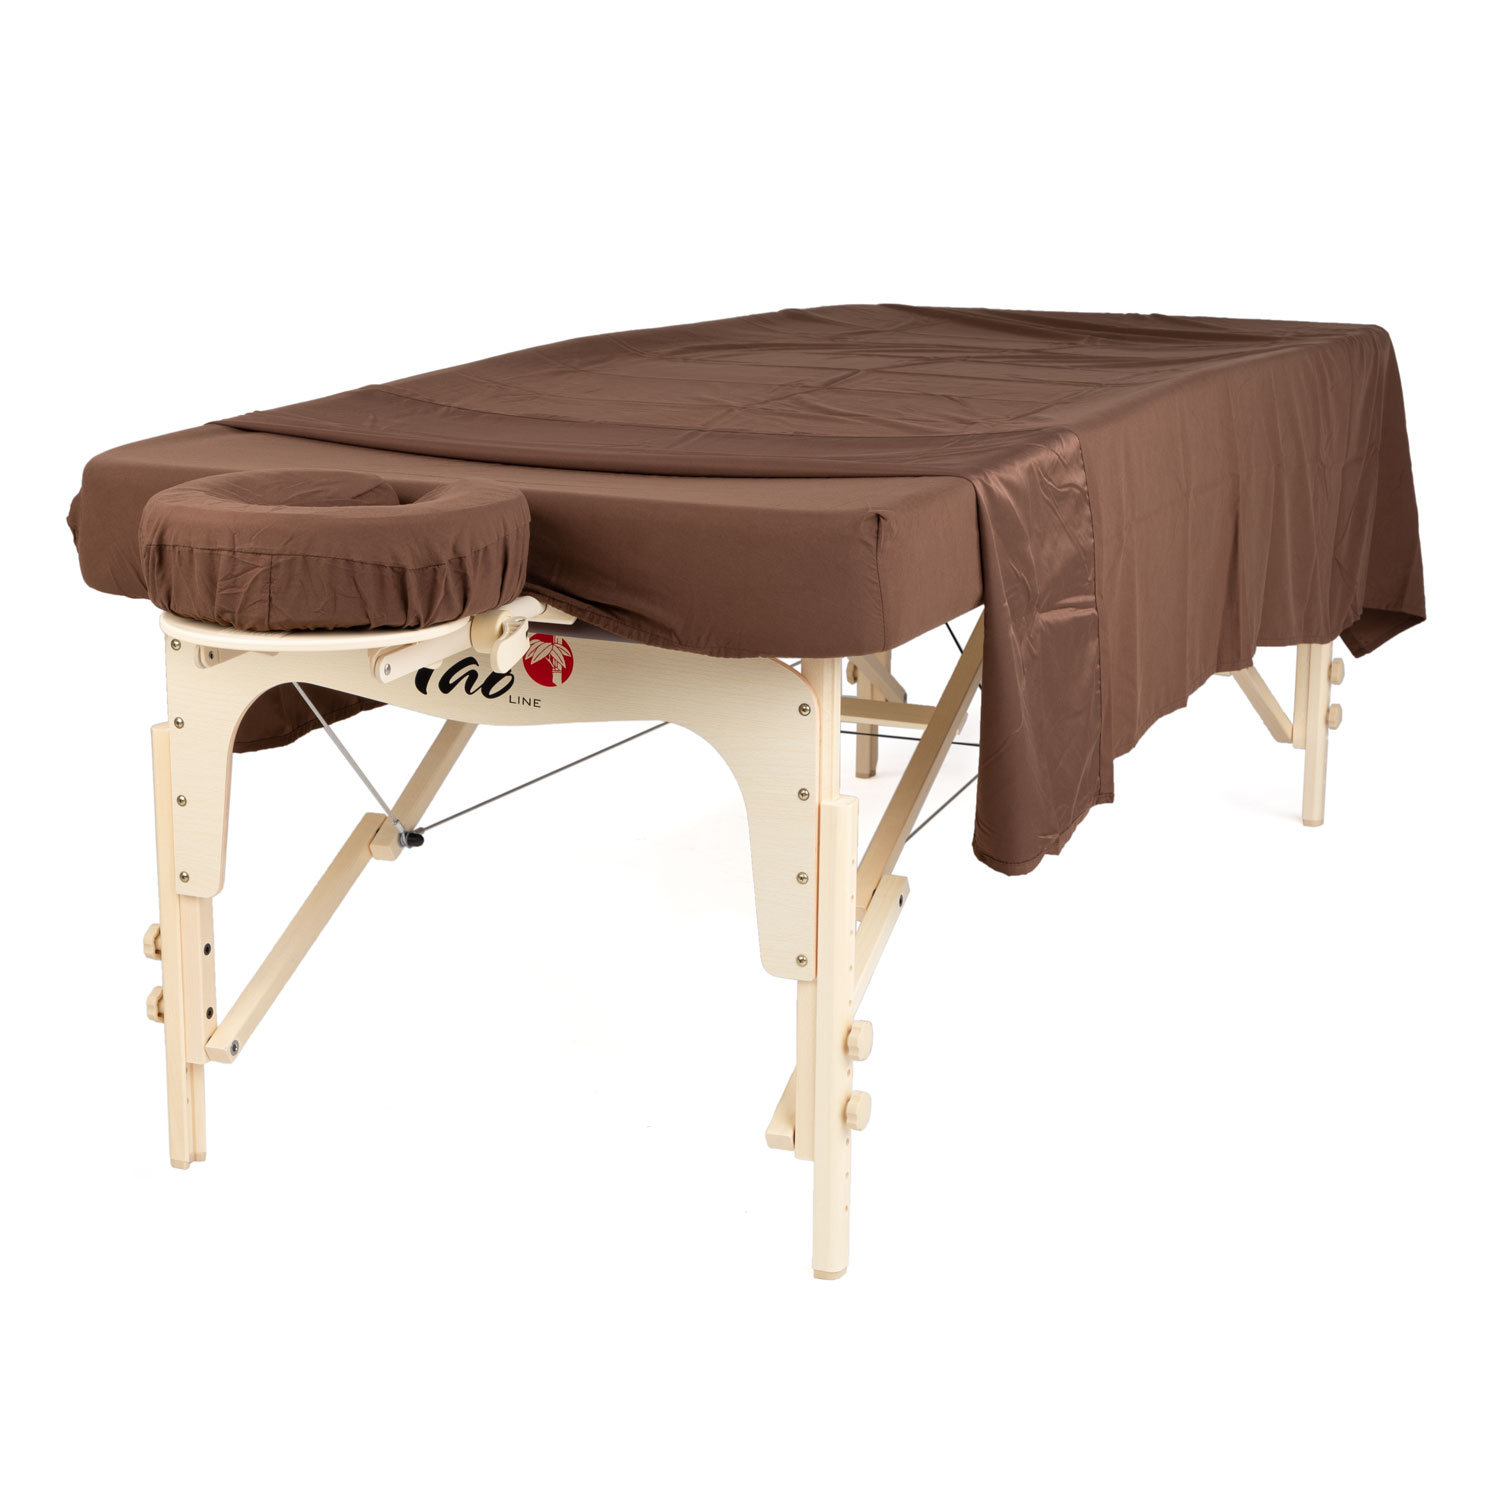 PimPam Factory - Drap table de massage en TNT - 14 Grs - Housse table de  soin idéale dimensions spéciales - Draps jetables 80 x 200 cm - Repousse  les liquides 